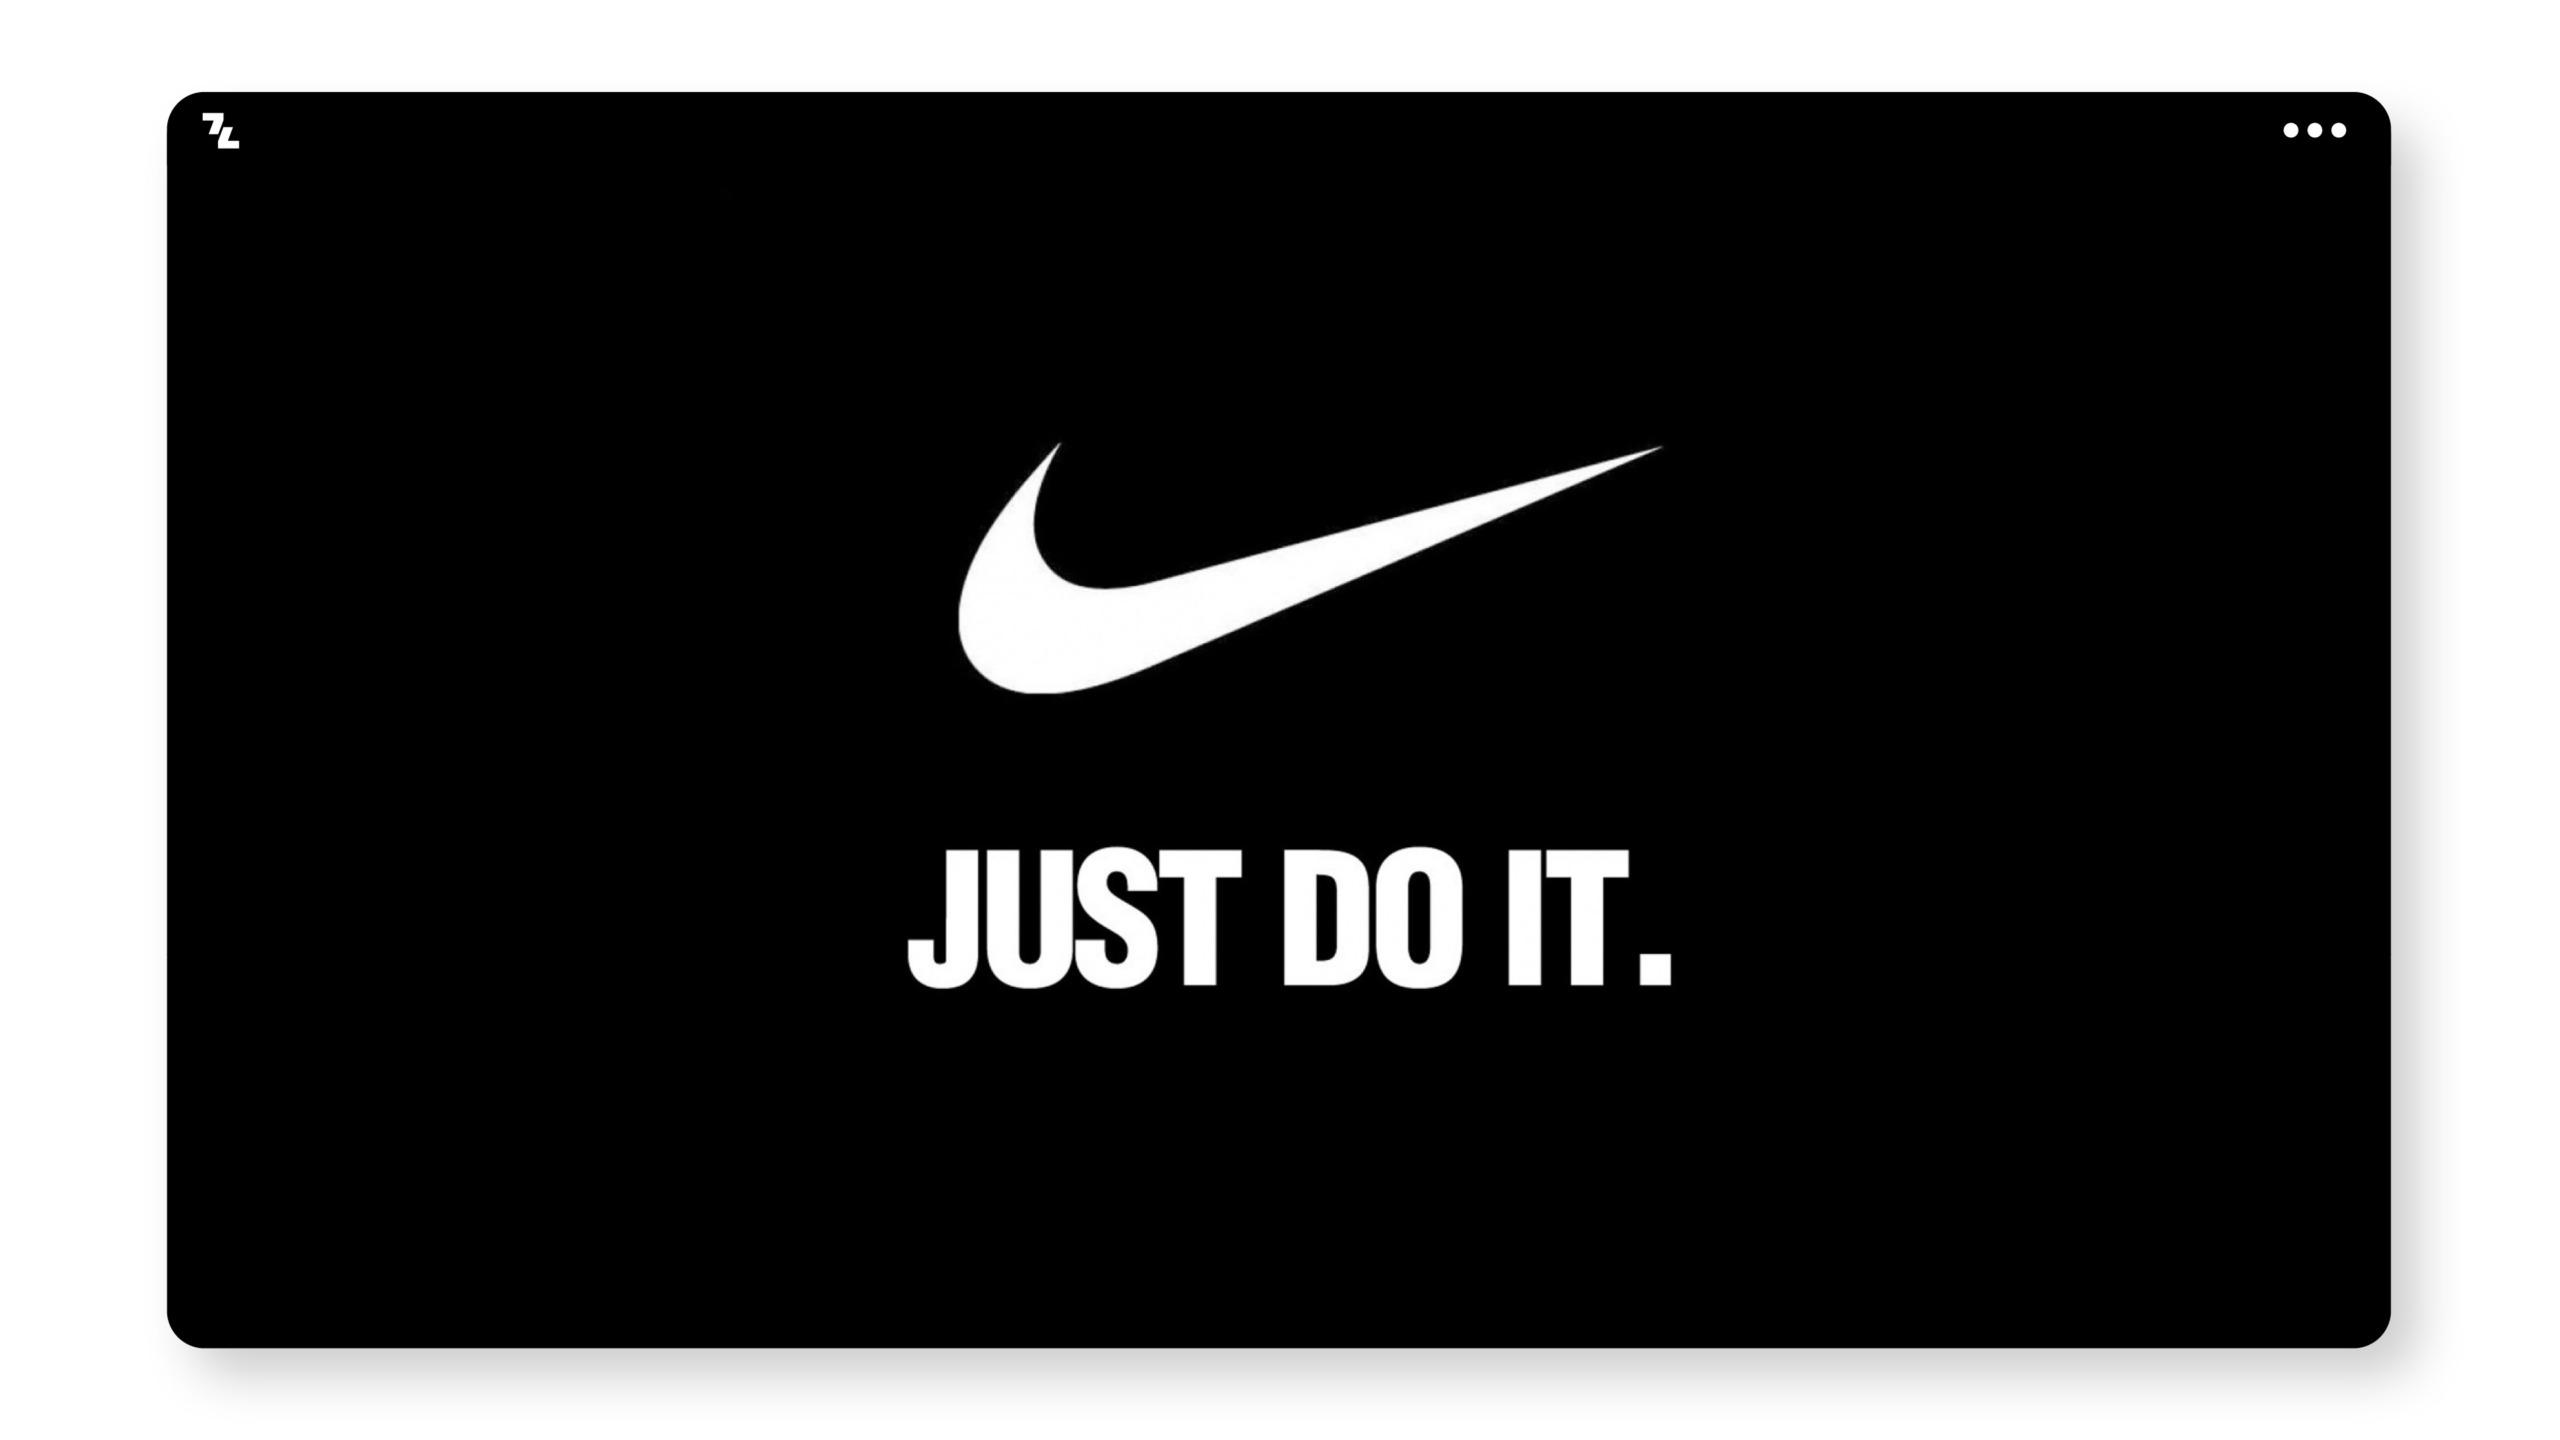 Ein schwarz-weißes Nike-Logo mit den Worten „Just do it“, das seinen Anspruch definiert.